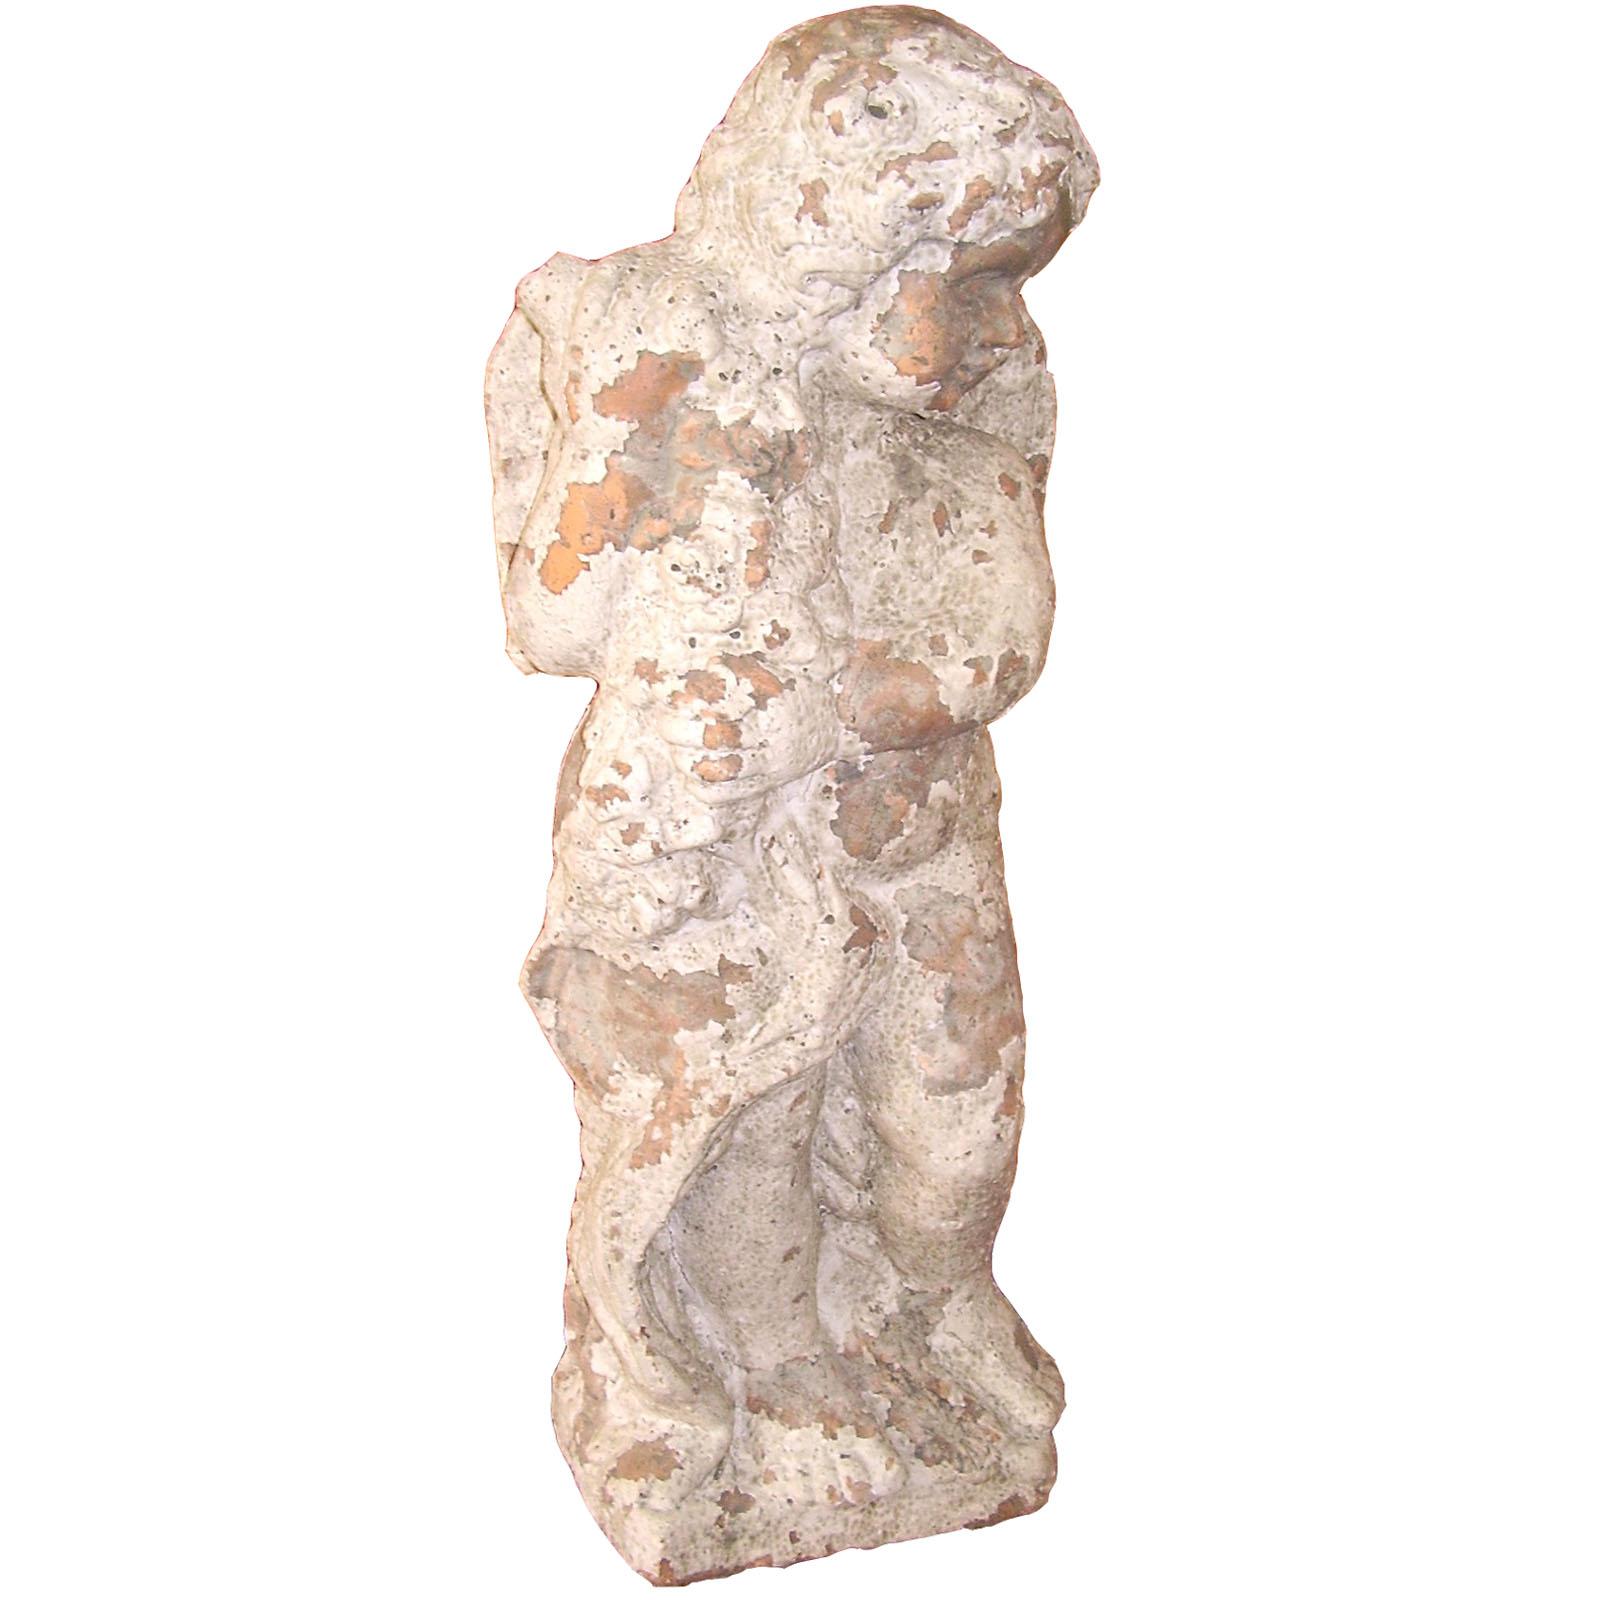 Precieuse et ancienne statue italienne d'un « chérubin » en terre cuite faite à la main